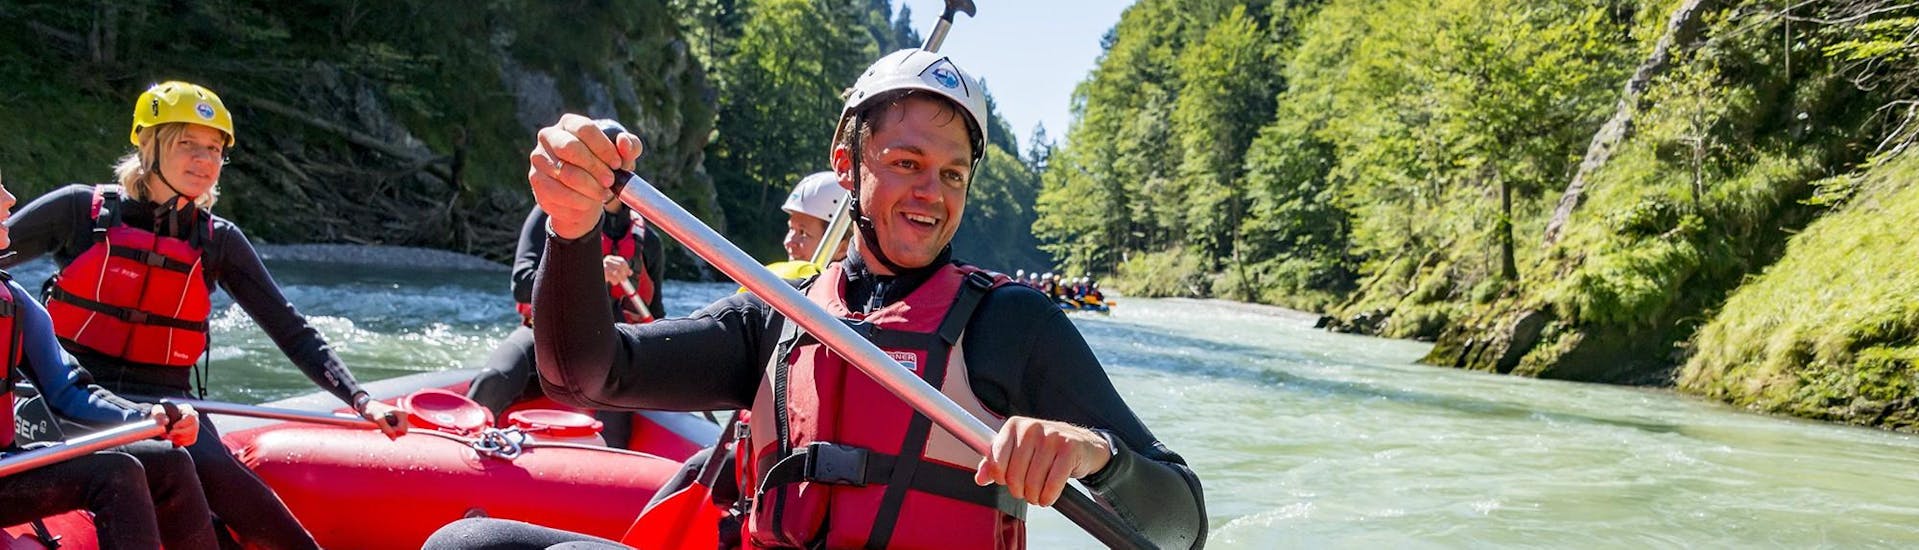 Ein Teilnehmer des Action Rafting auf der Tiroler Großache mit dem Adventure Club Kaiserwinkl Kössen paddelt in einem Raft durch eine spritzige Stromschnelle.